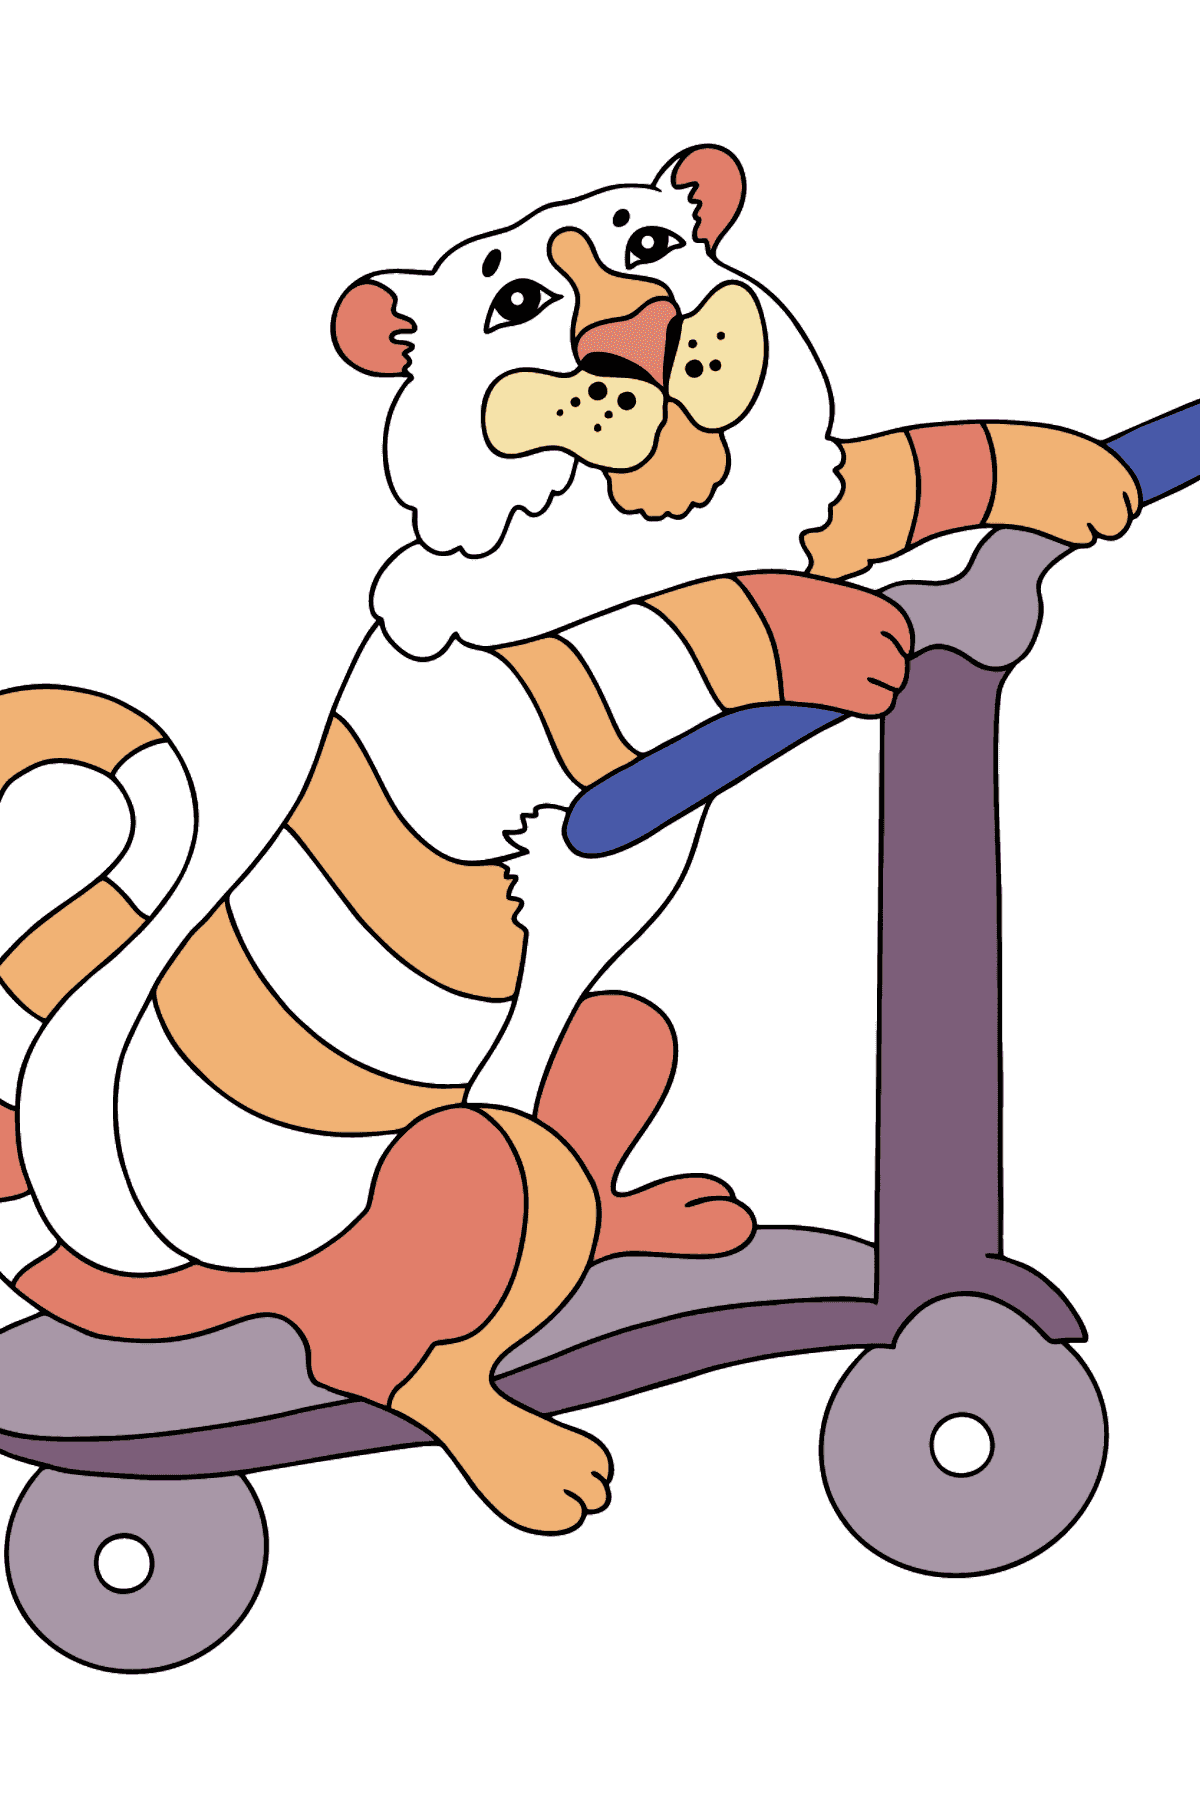 Ein Tiger zum Ausmalen auf einem ausgefallenen Roller - Malvorlagen für Kinder